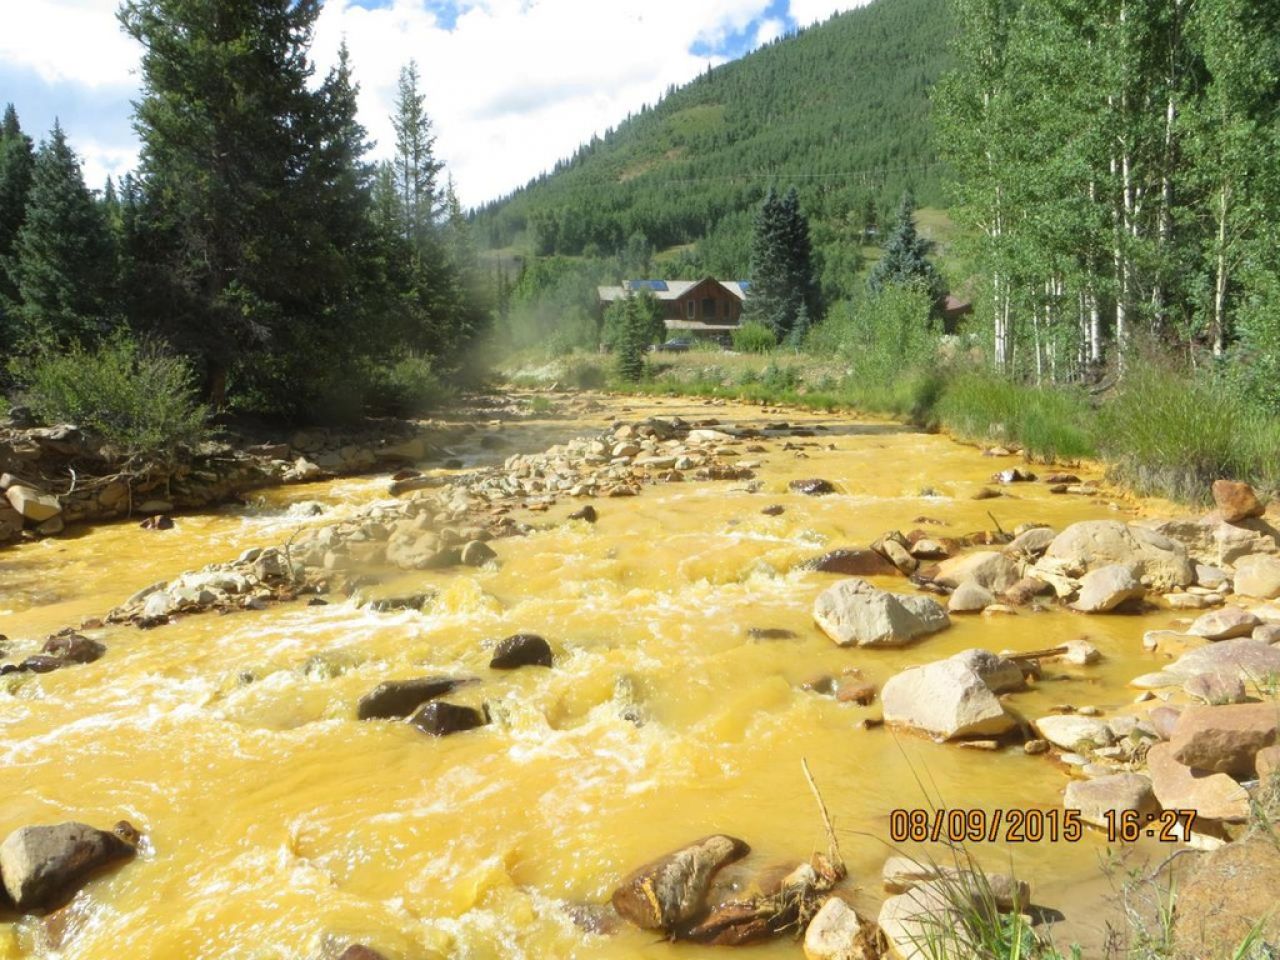 EN IMAGES. Des rivières polluées virent à l'orange dans l'ouest américain